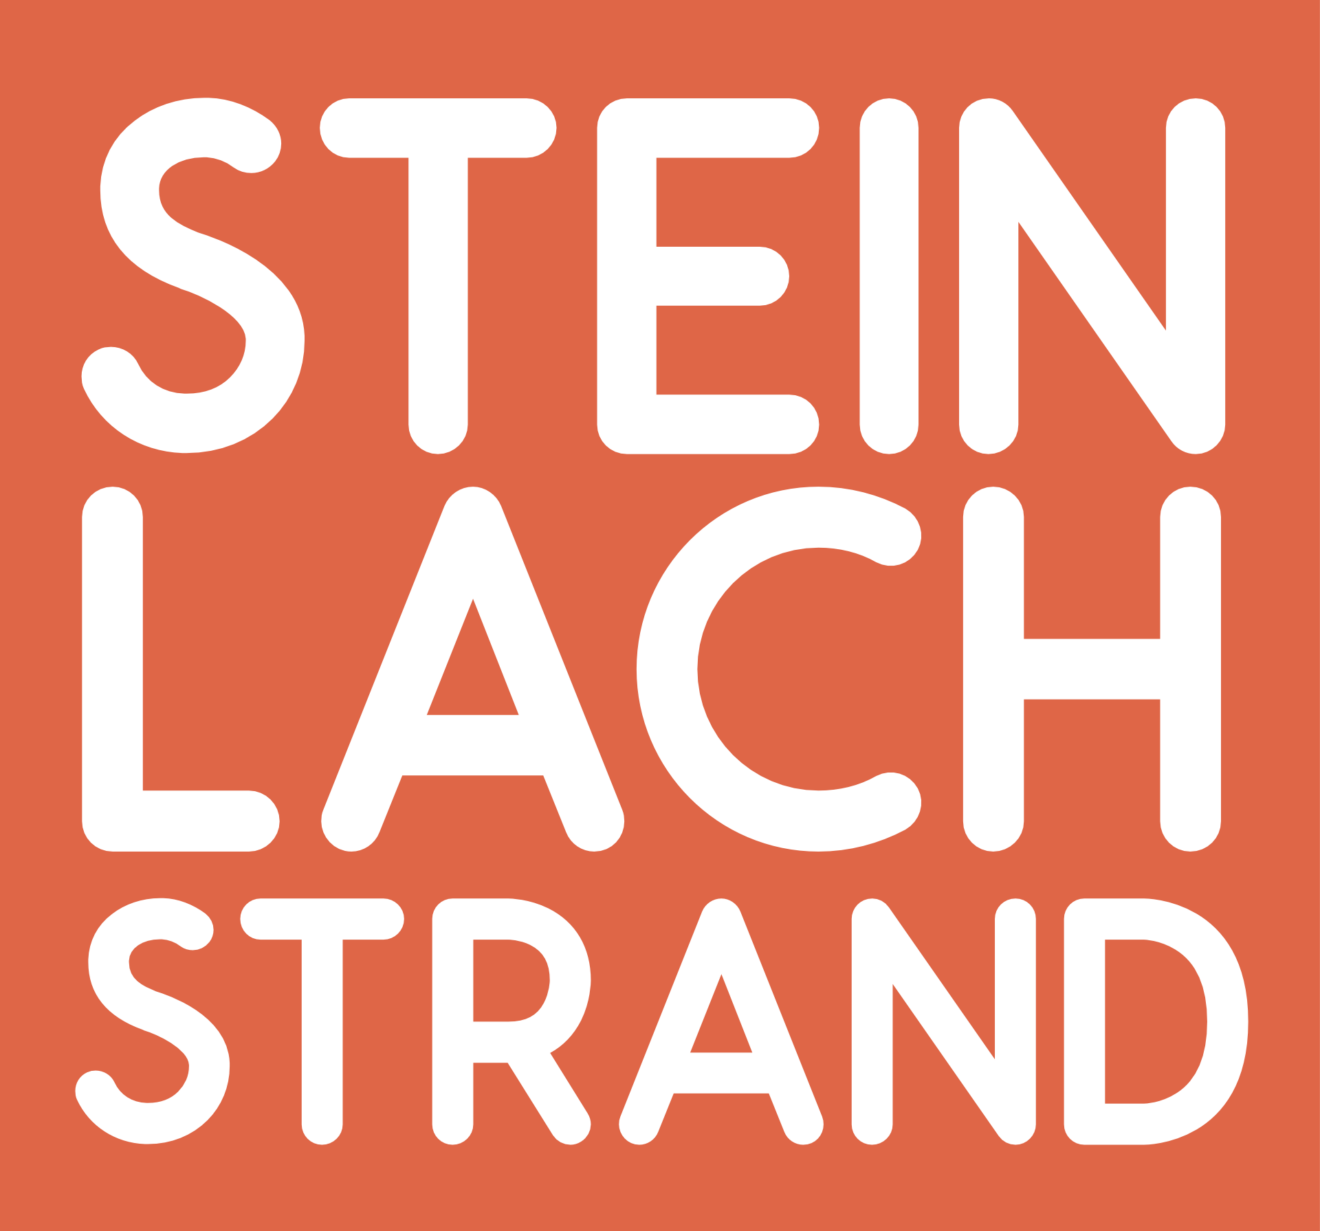 Steinlachstrand-Saison 2023